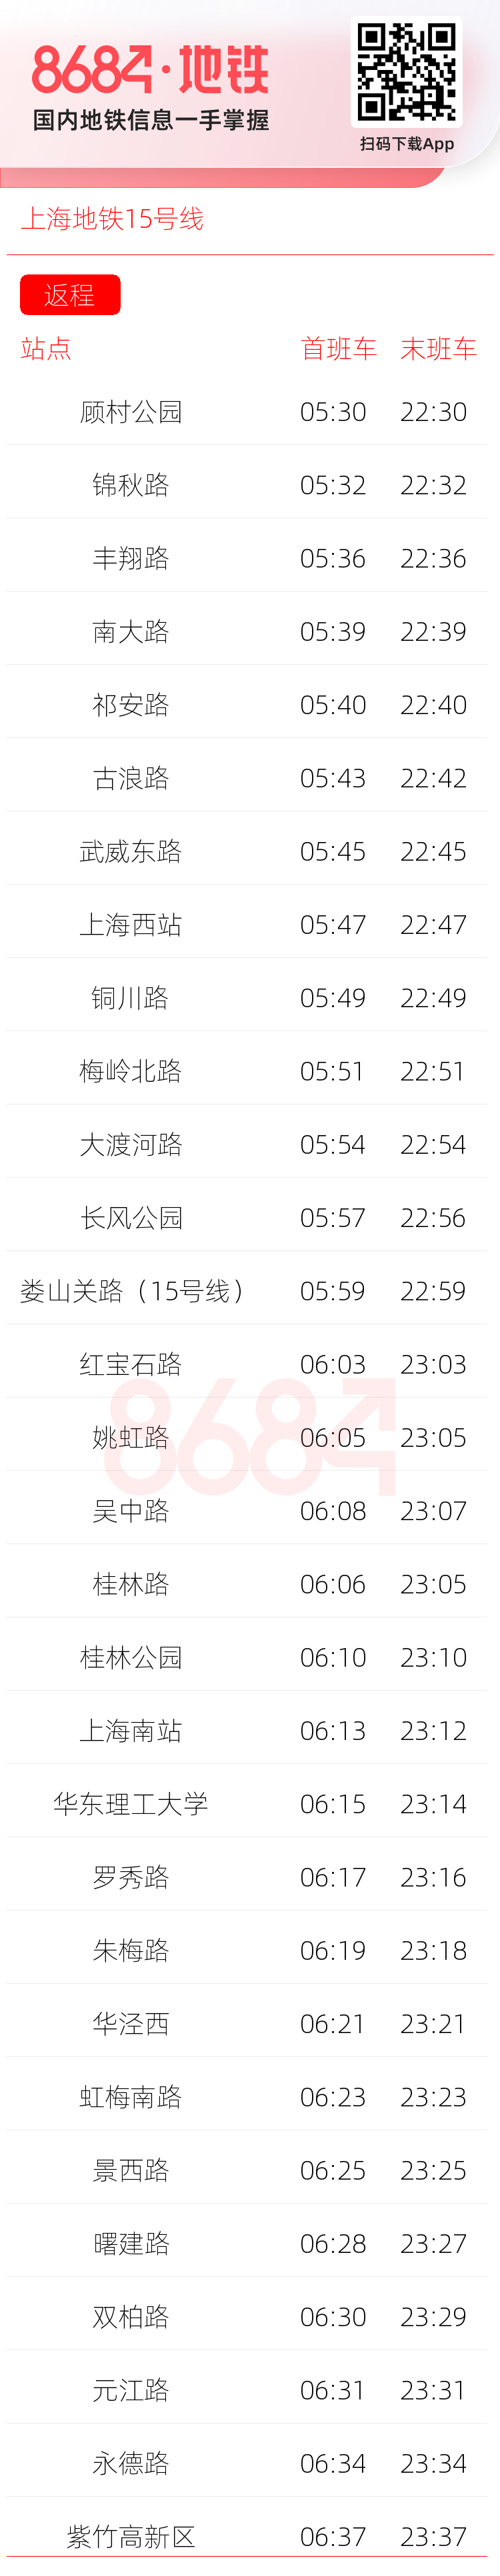 上海地铁15号线运营时间表